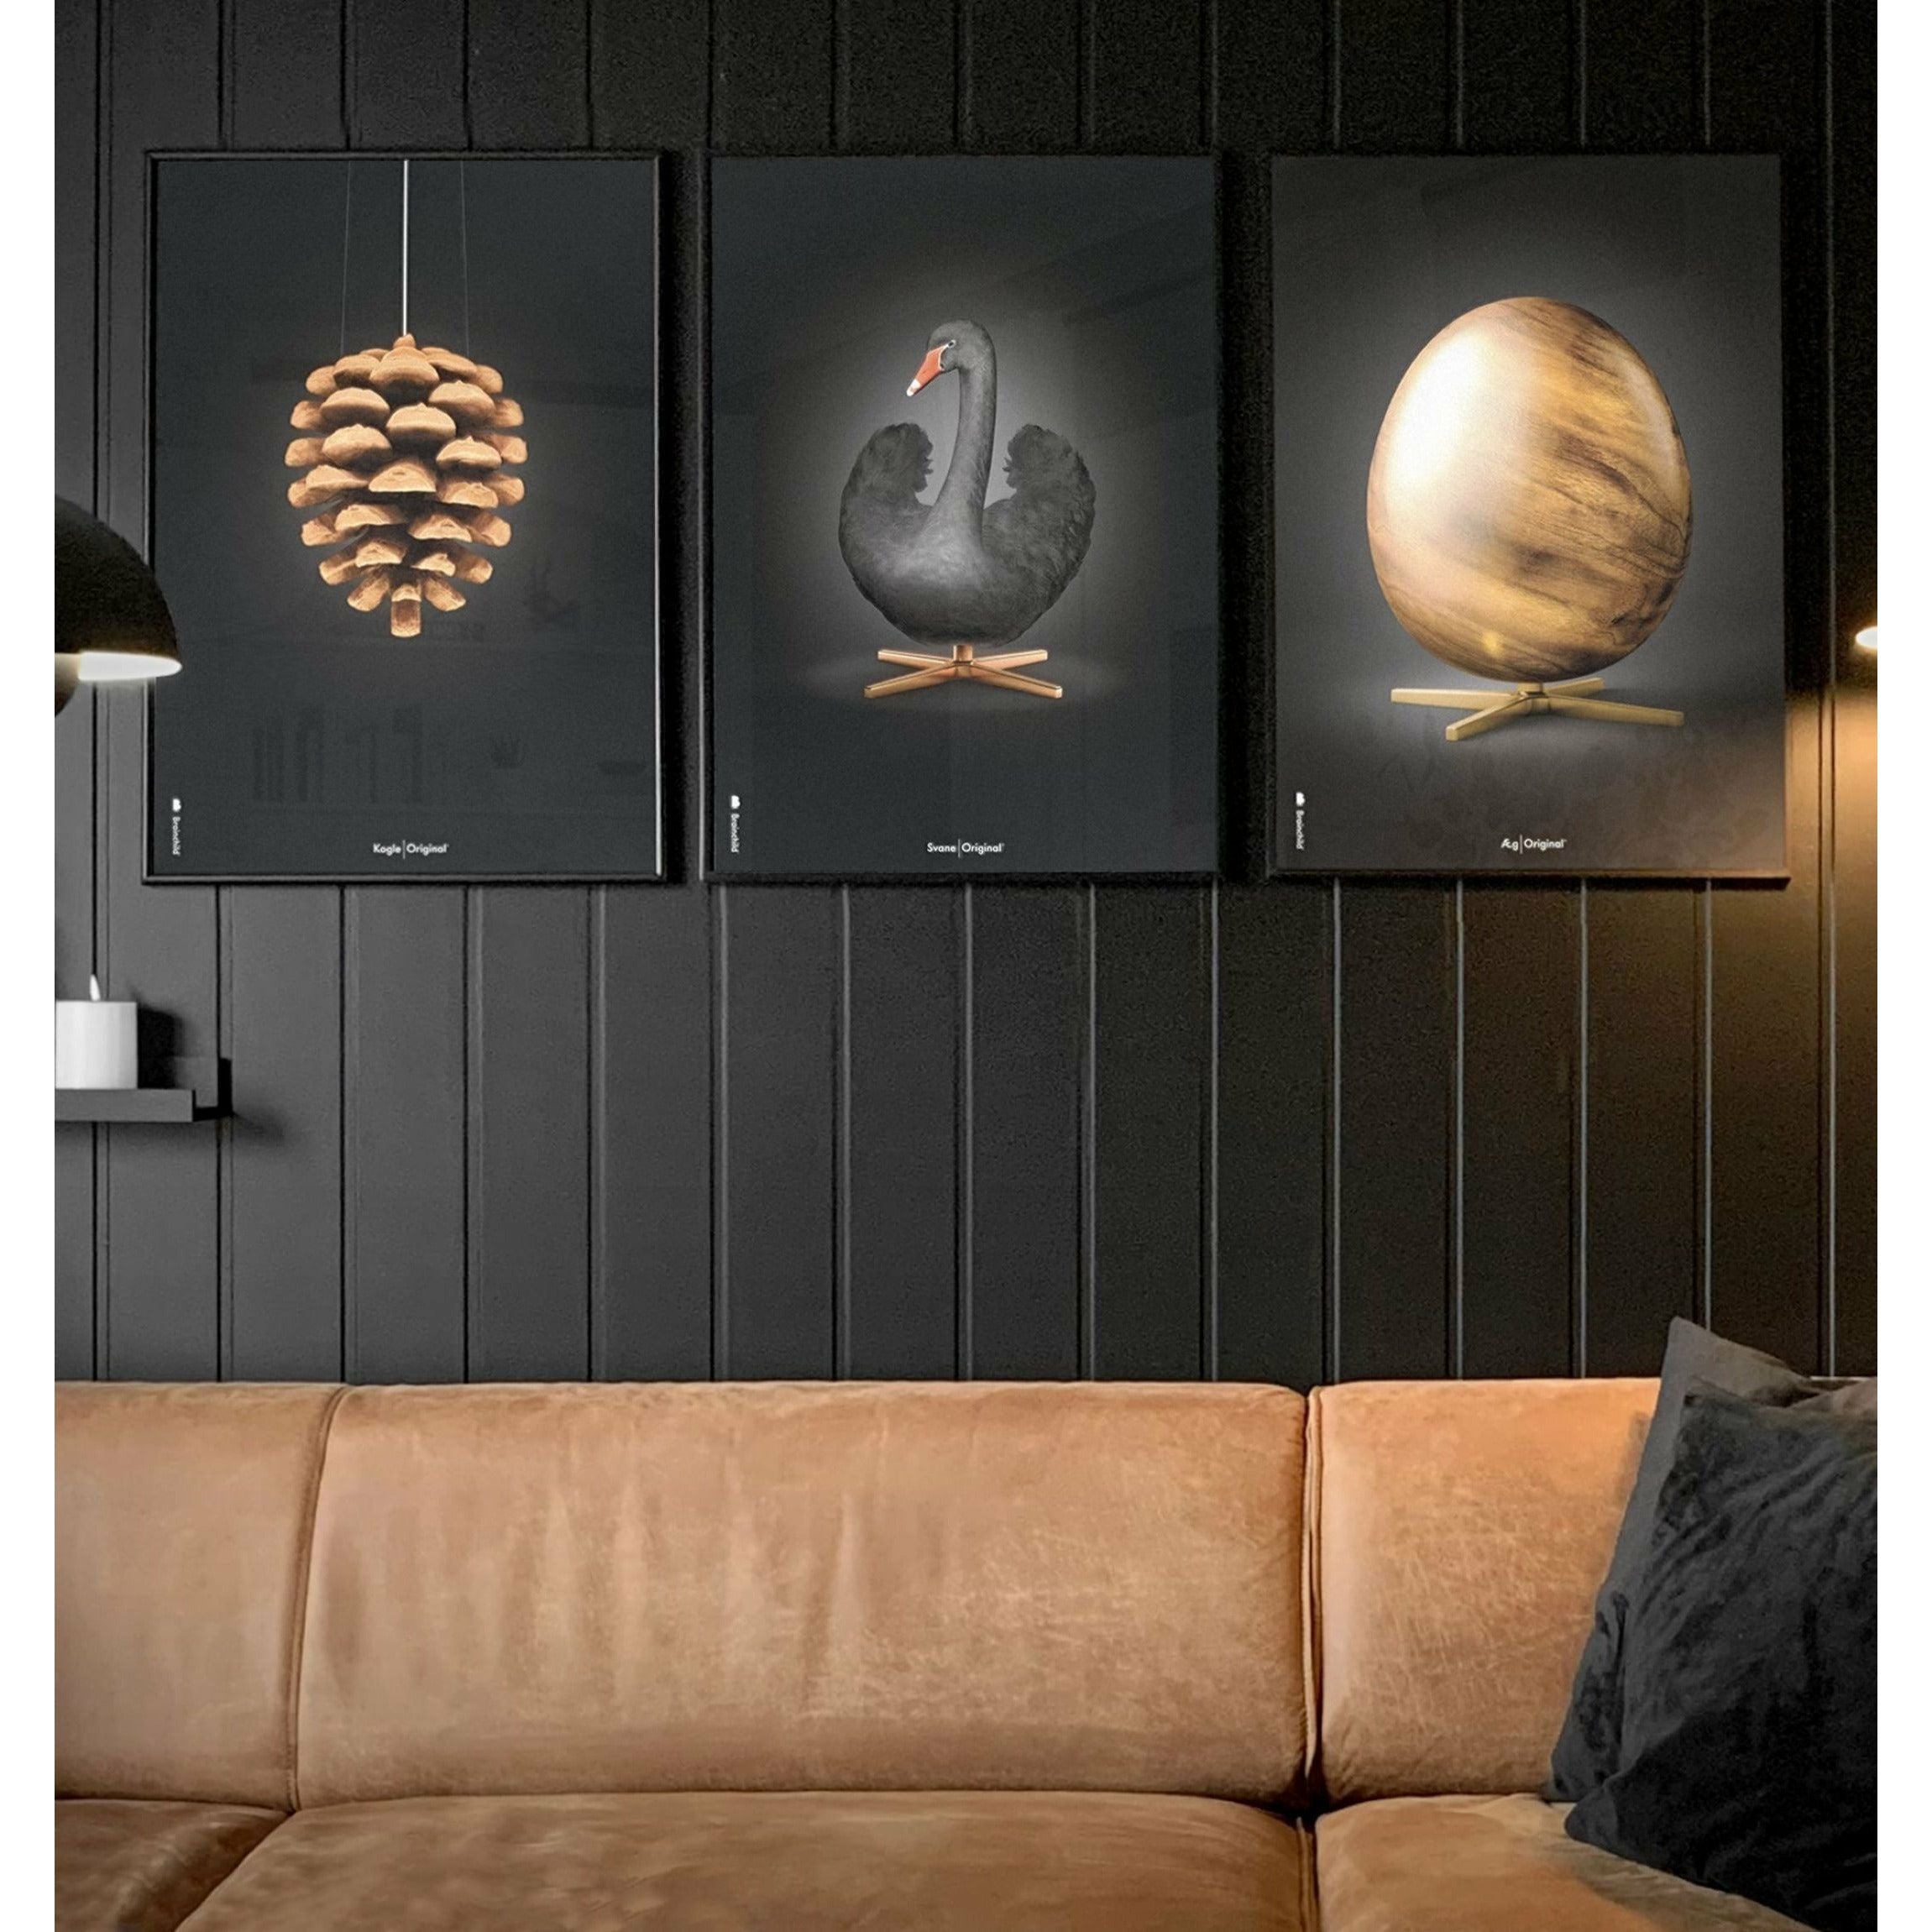 Brainchild Ei-Figuren Poster, Rahmen aus hellem Holz 70x100 Cm, Schwarz